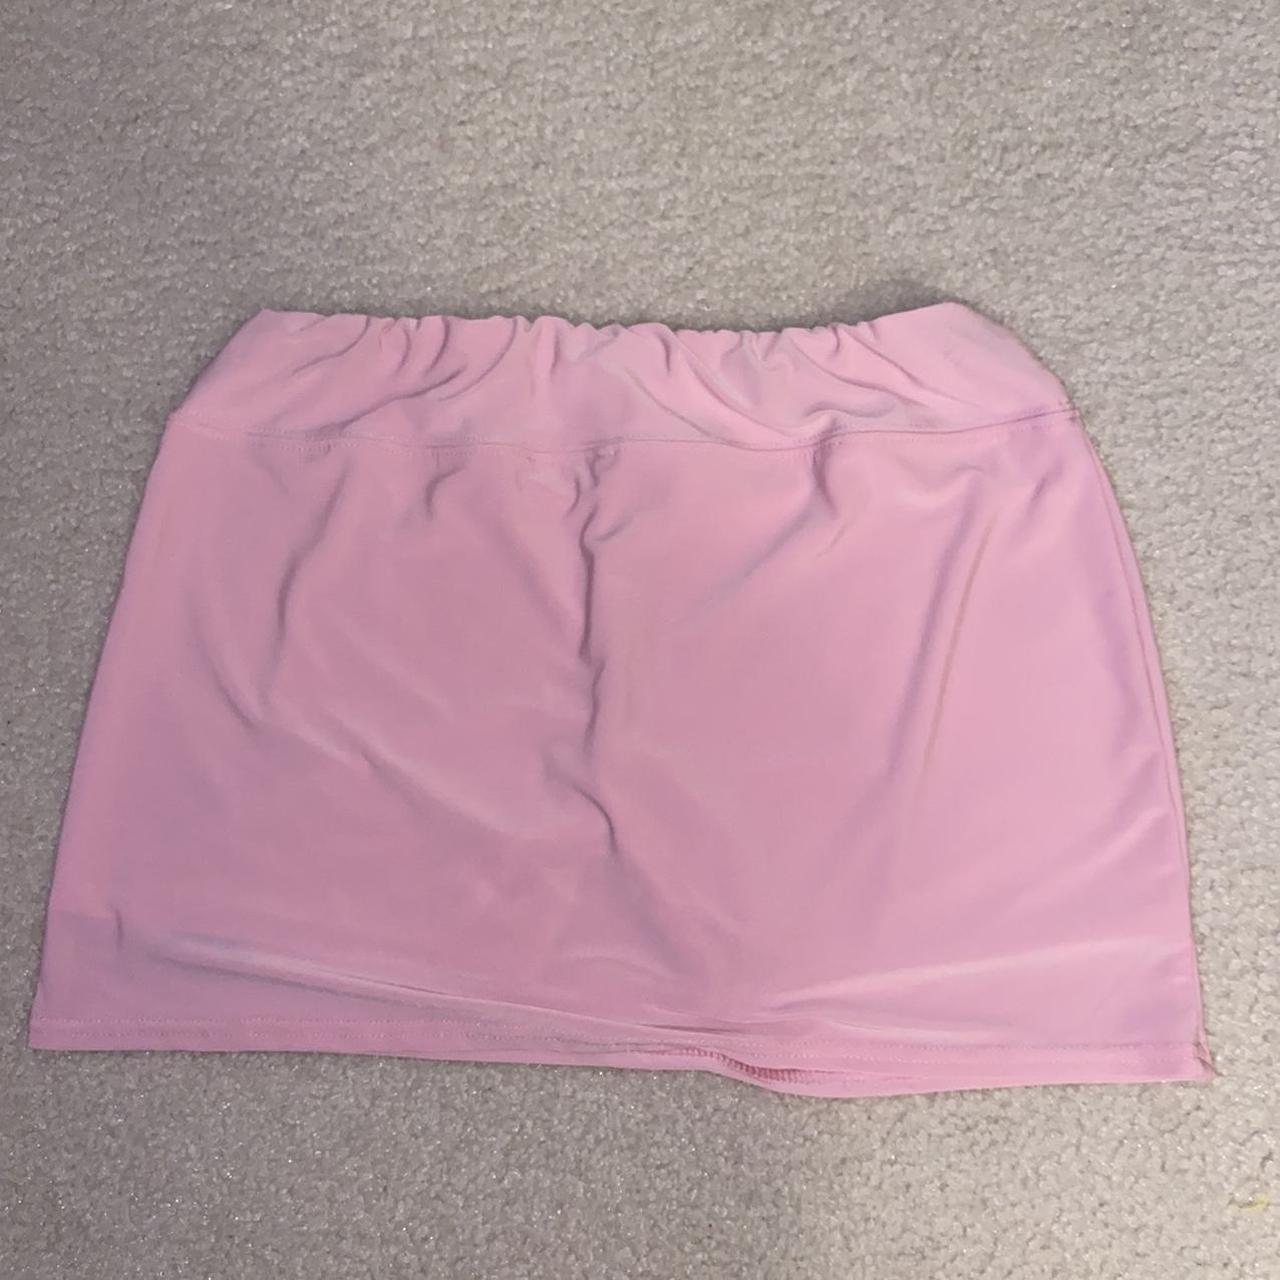 Slazenger Women's Pink Skirt (4)